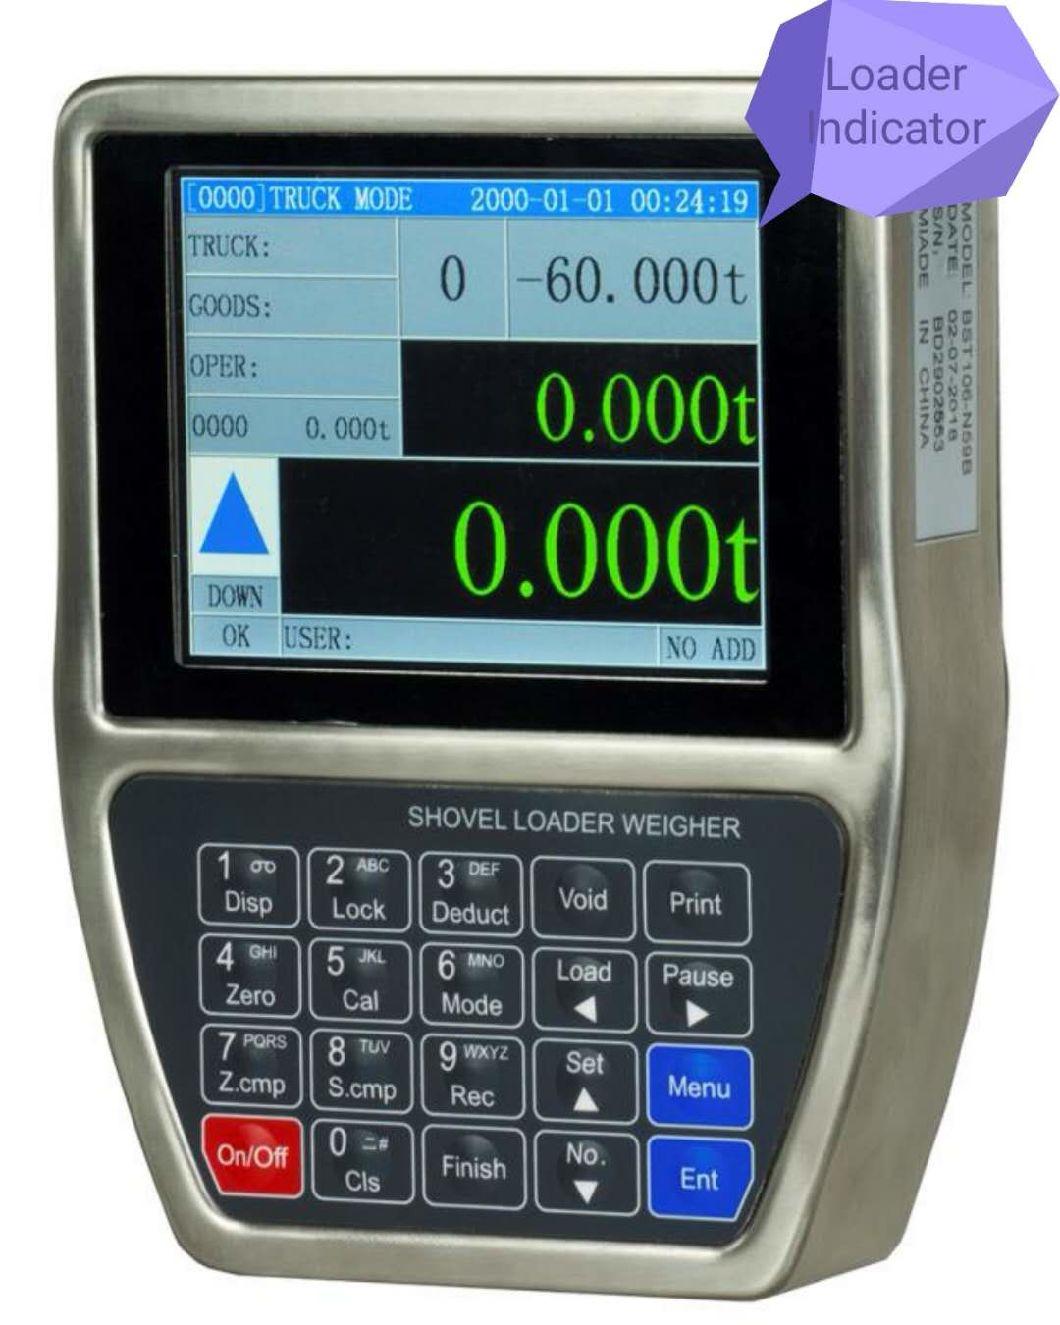 Supmeter Wheel Loader Weigher, Loader Car Weighing Scales System, Loader Weighing Scales with Printer Bst106-N59